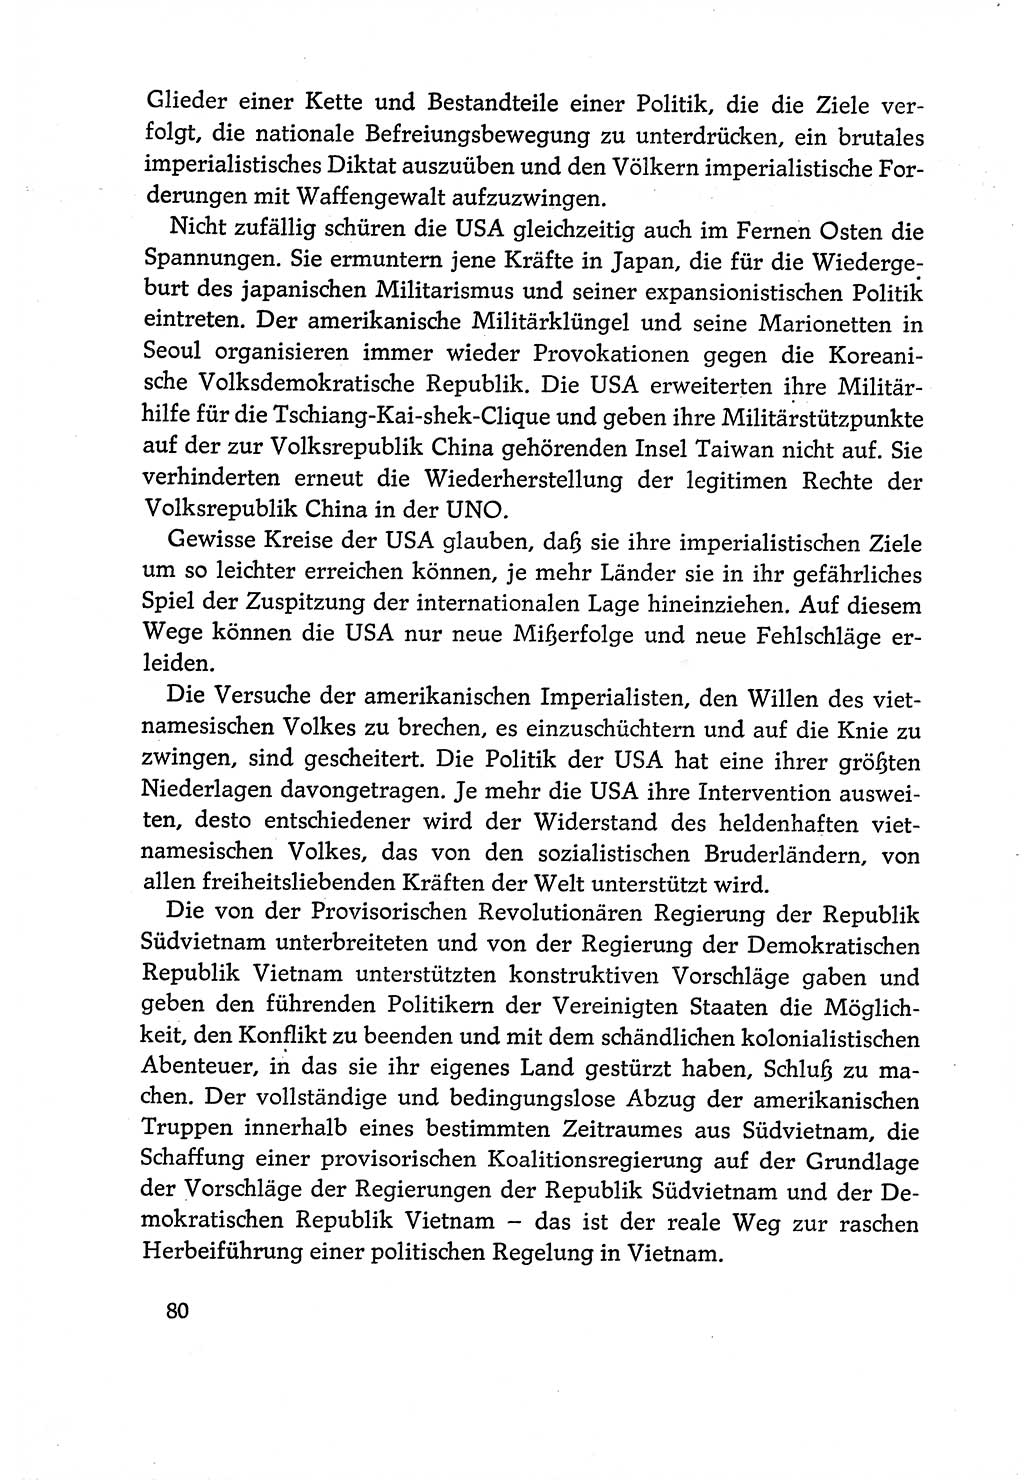 Dokumente der Sozialistischen Einheitspartei Deutschlands (SED) [Deutsche Demokratische Republik (DDR)] 1970-1971, Seite 80 (Dok. SED DDR 1970-1971, S. 80)